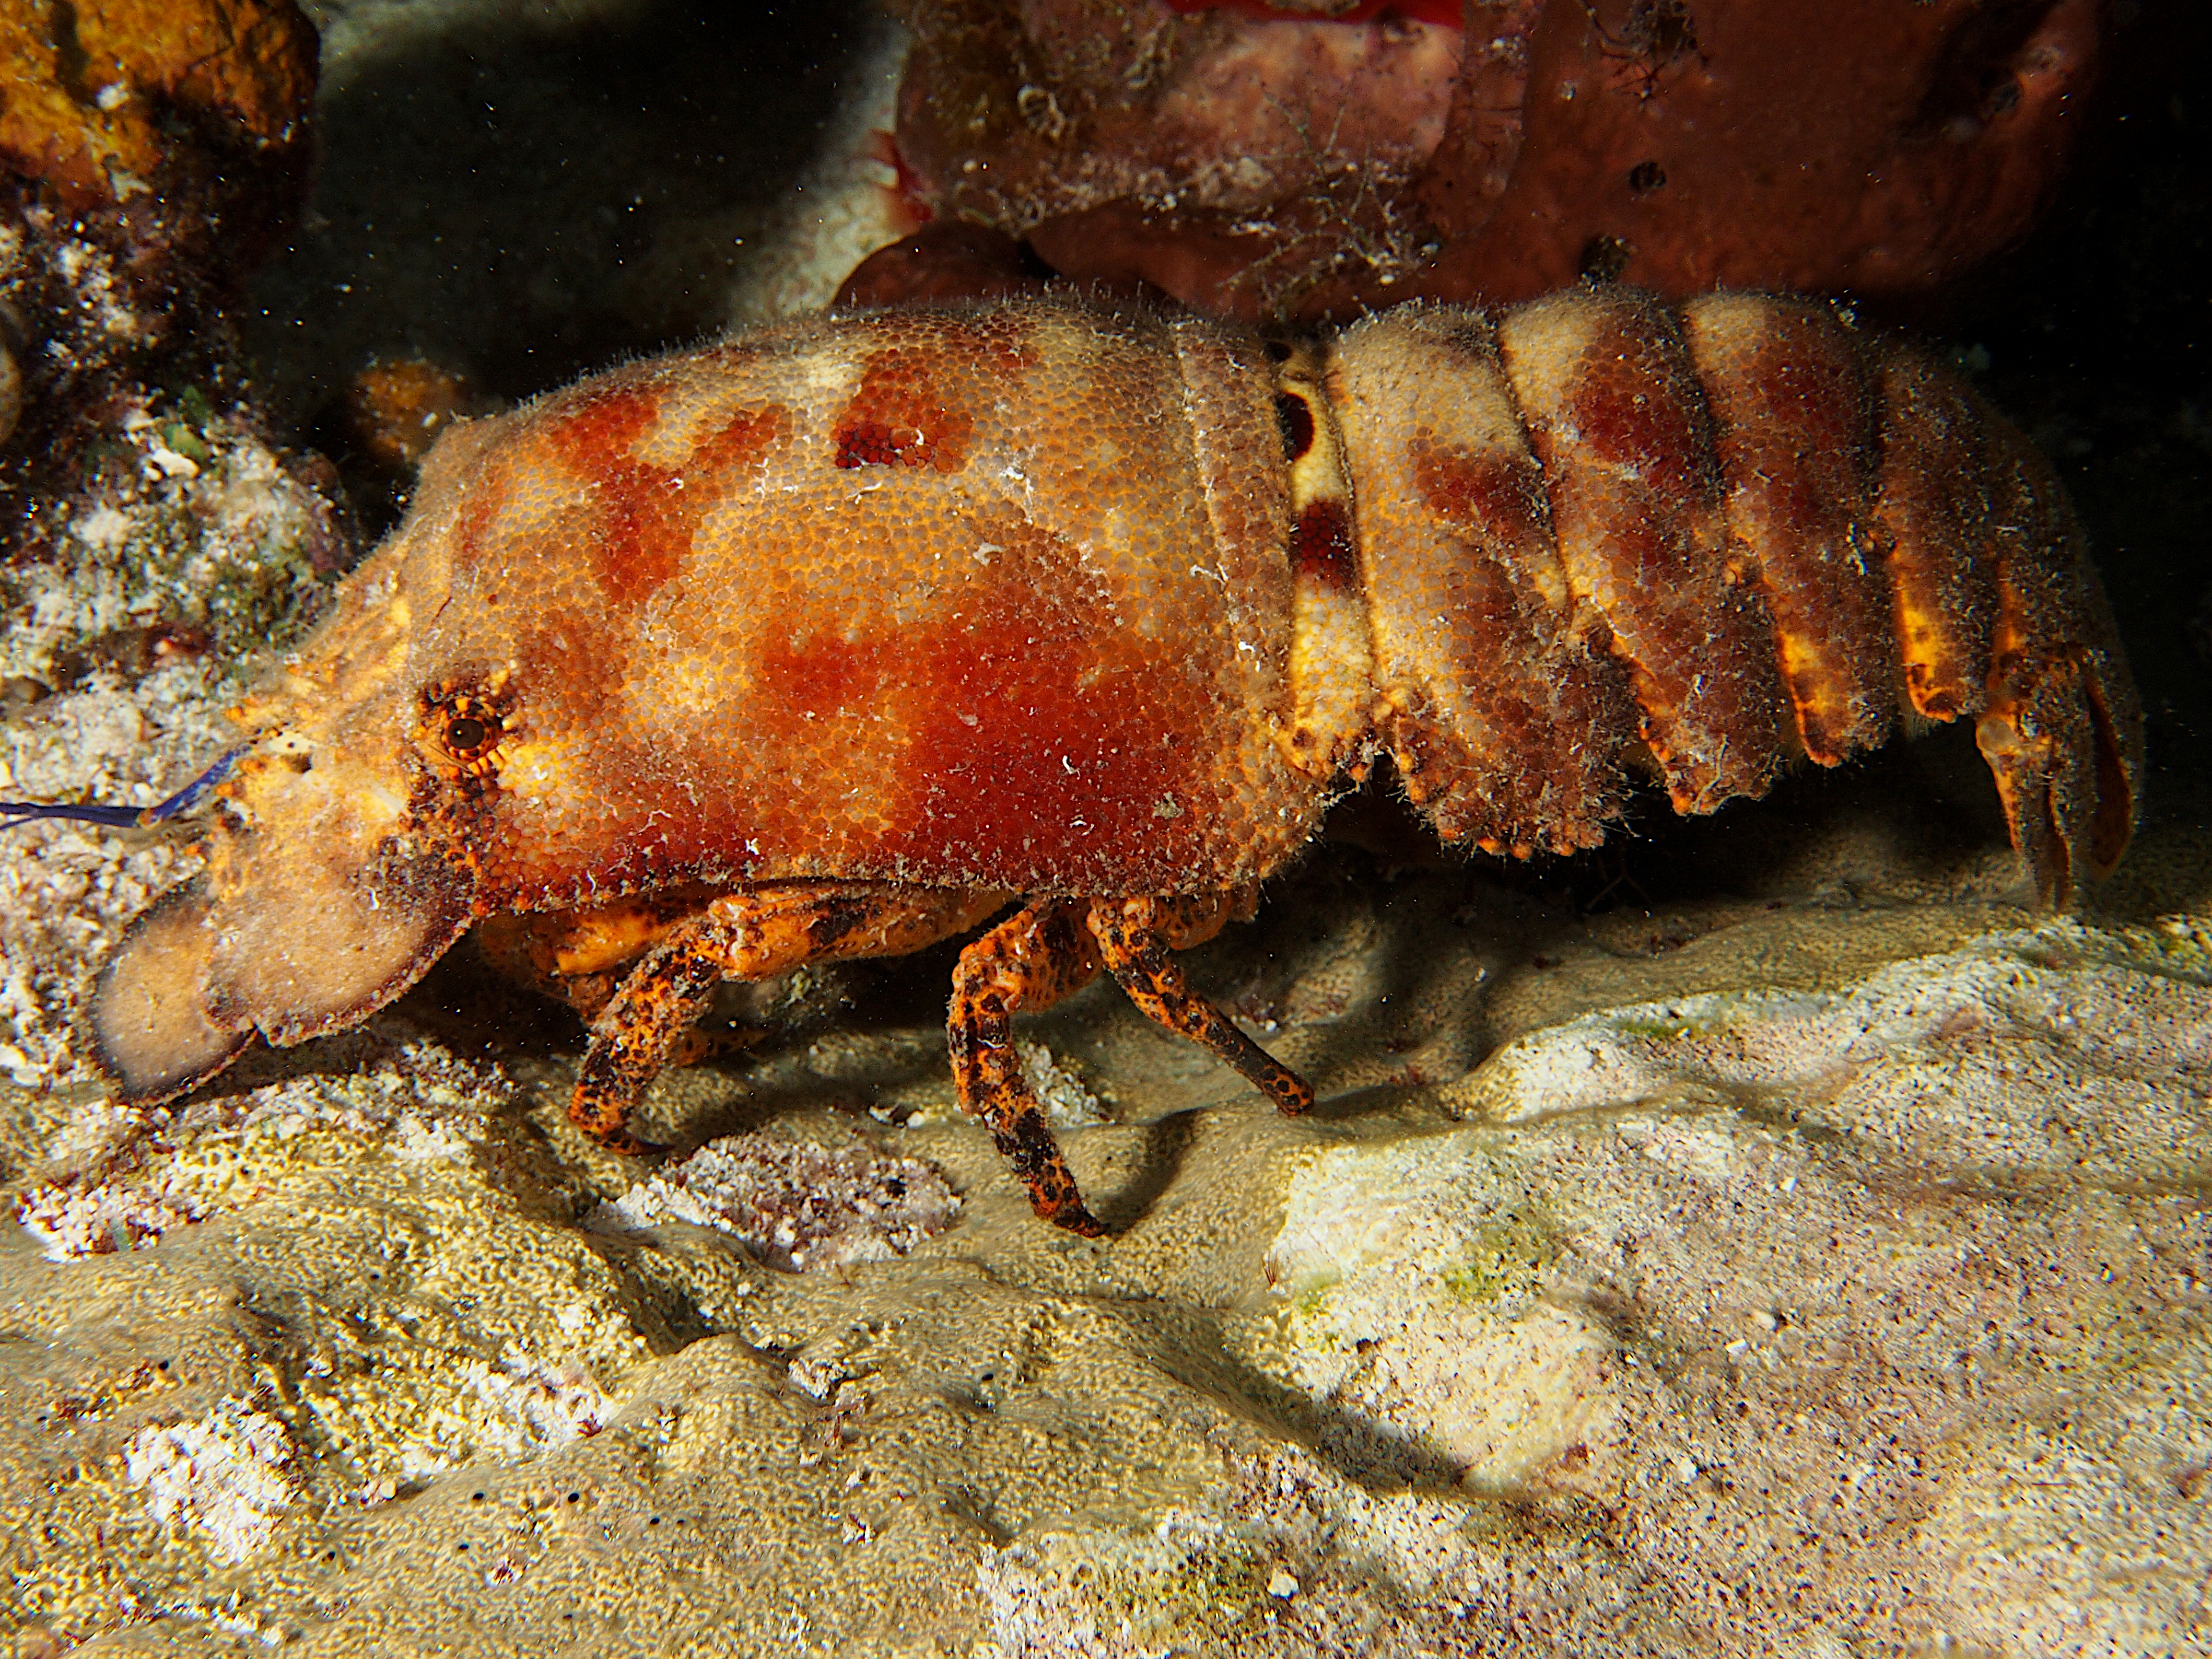 Spanish Lobster - Scyllarides aequinoctialis